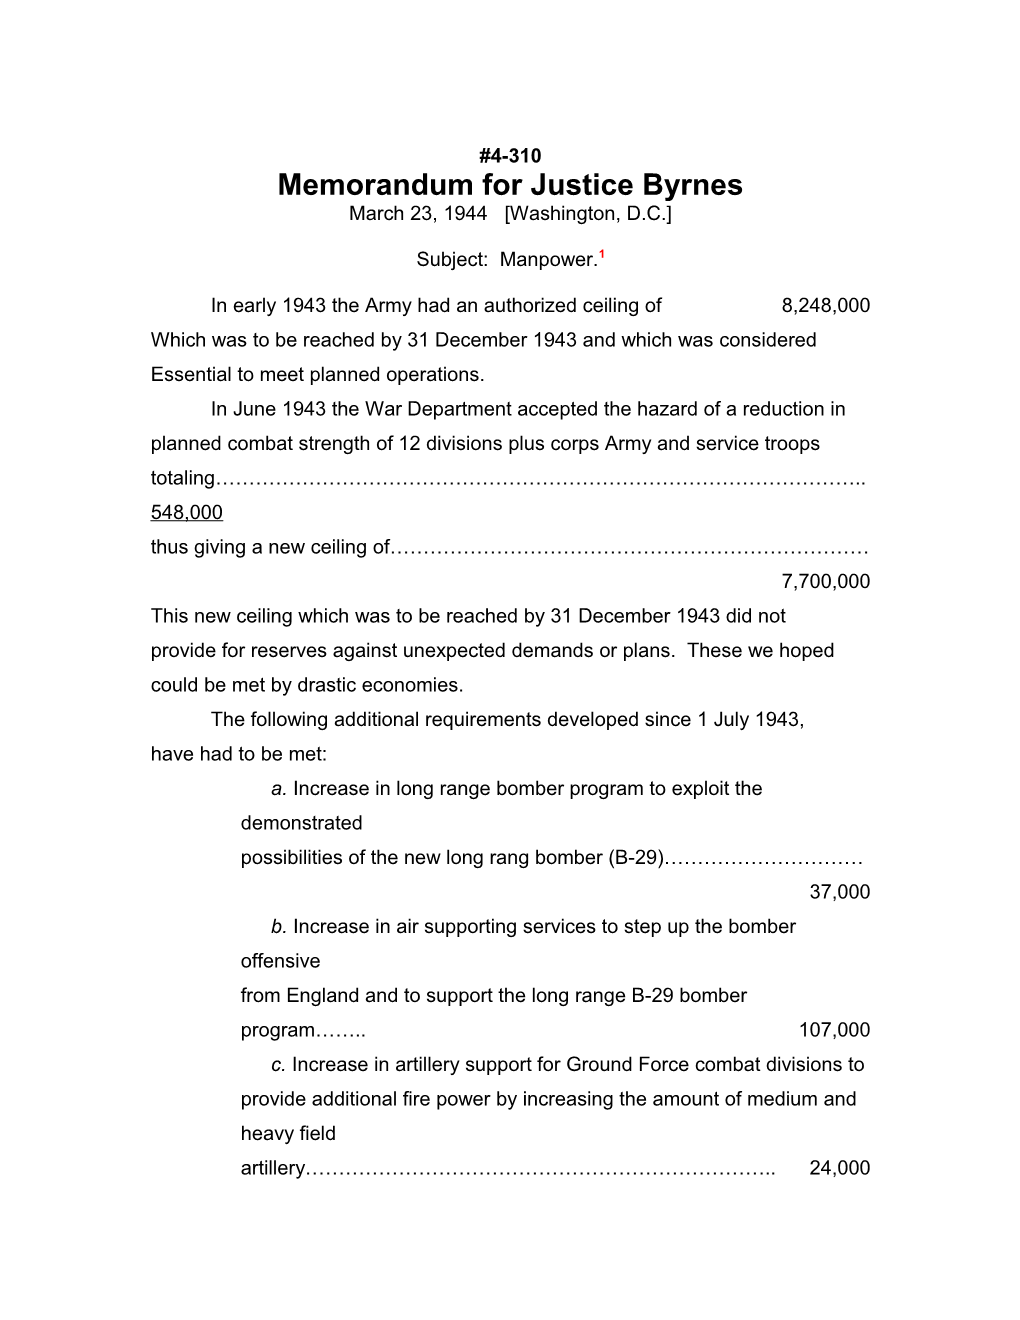 Memorandum for Justice Byrnes